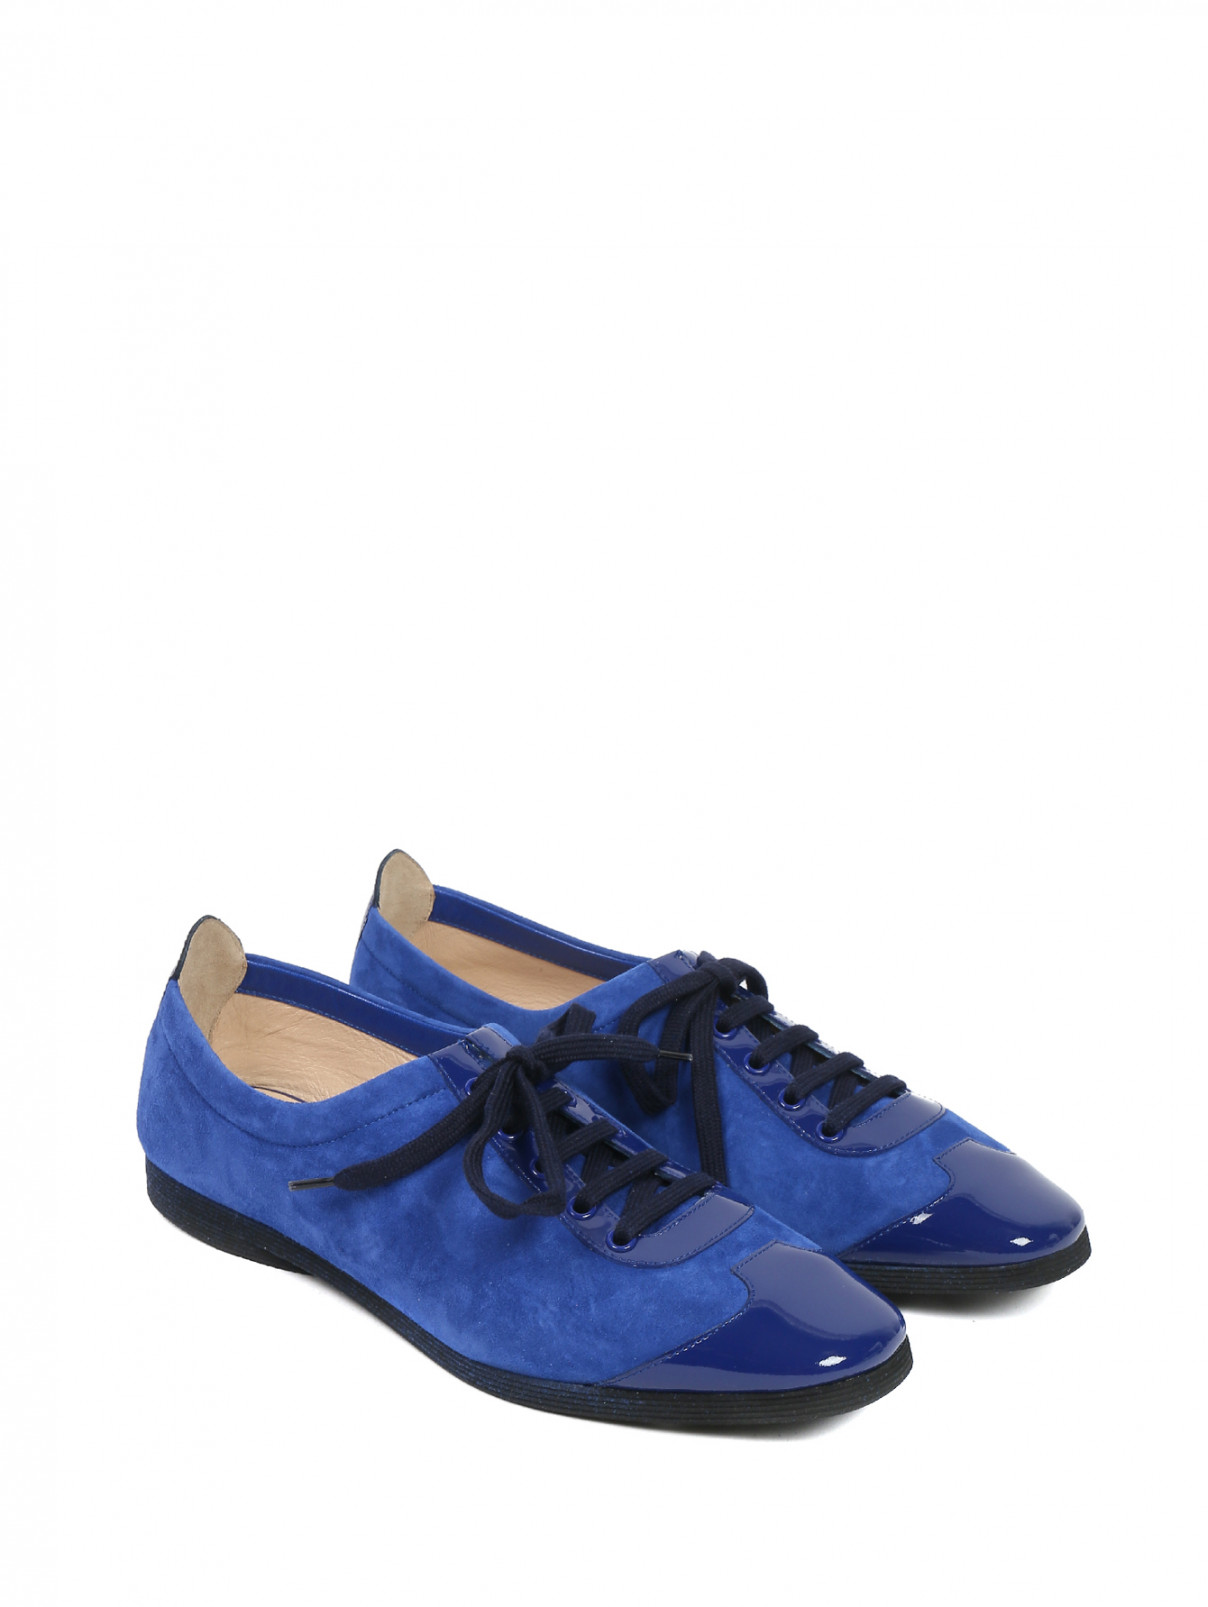 Туфли замшевые на шнуровке Emporio Armani  –  Общий вид  – Цвет:  Синий